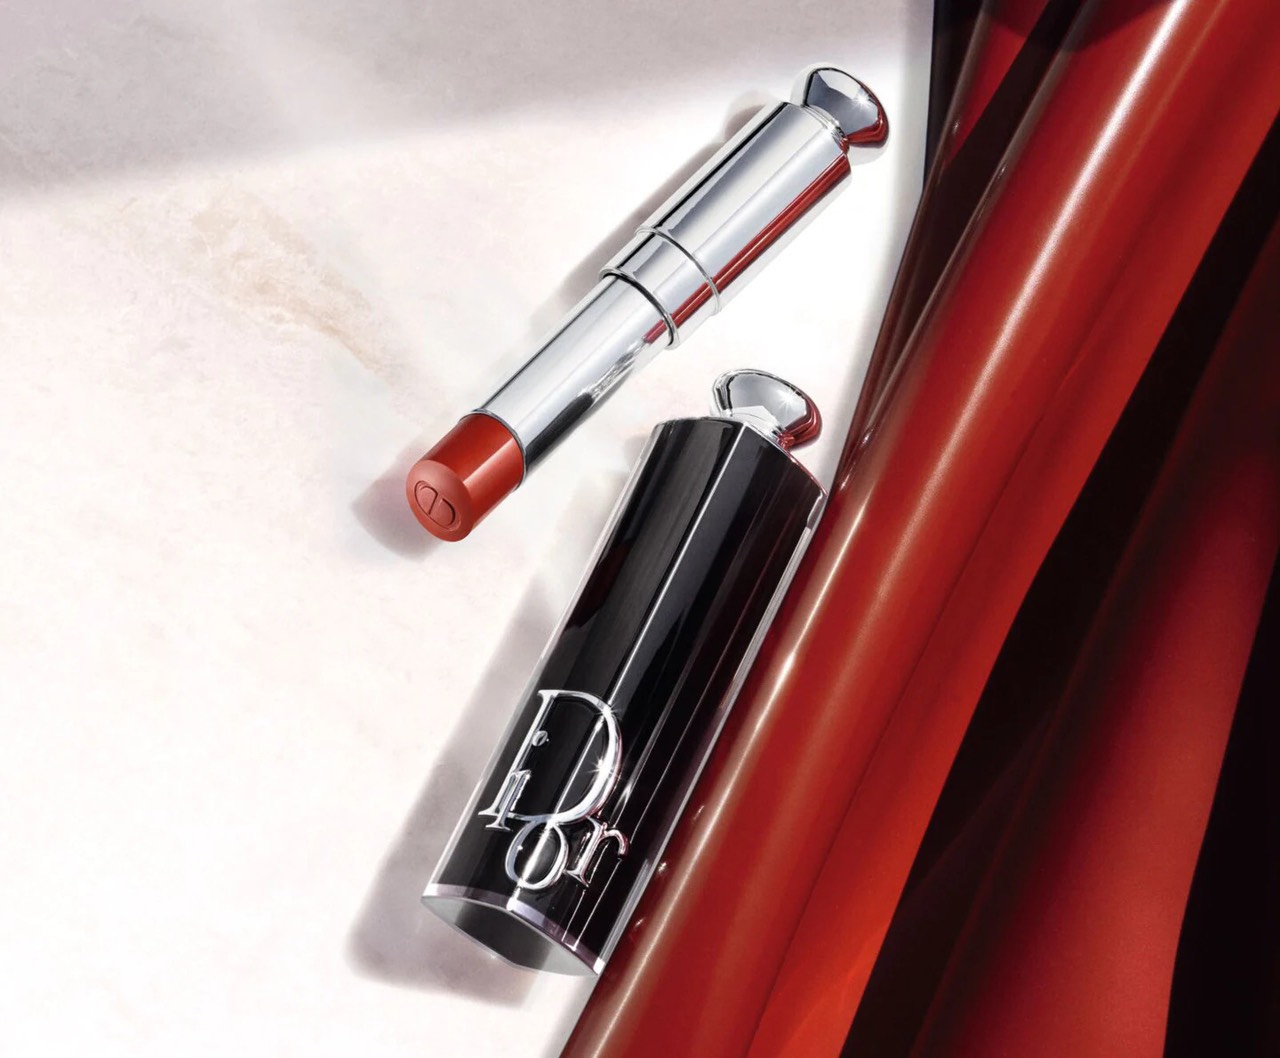 𝐌𝐚𝐮 𝐦𝐨𝐢 𝟐𝟎𝟐𝟐 𝐒𝐨𝐧 𝐃𝐢𝐨𝐫 𝐀𝐃𝐃𝐈𝐂𝐓  𝐑𝐞𝐟𝐢𝐥𝐥𝐚𝐛𝐥𝐞 𝐒𝐡𝐢𝐧𝐞 𝐋𝐢𝐩𝐬𝐭𝐢𝐜𝐤  Dior Addict Shine  Lipstick là dòng son vừa mới ra mắt vào đầu năm 2022  Instagram